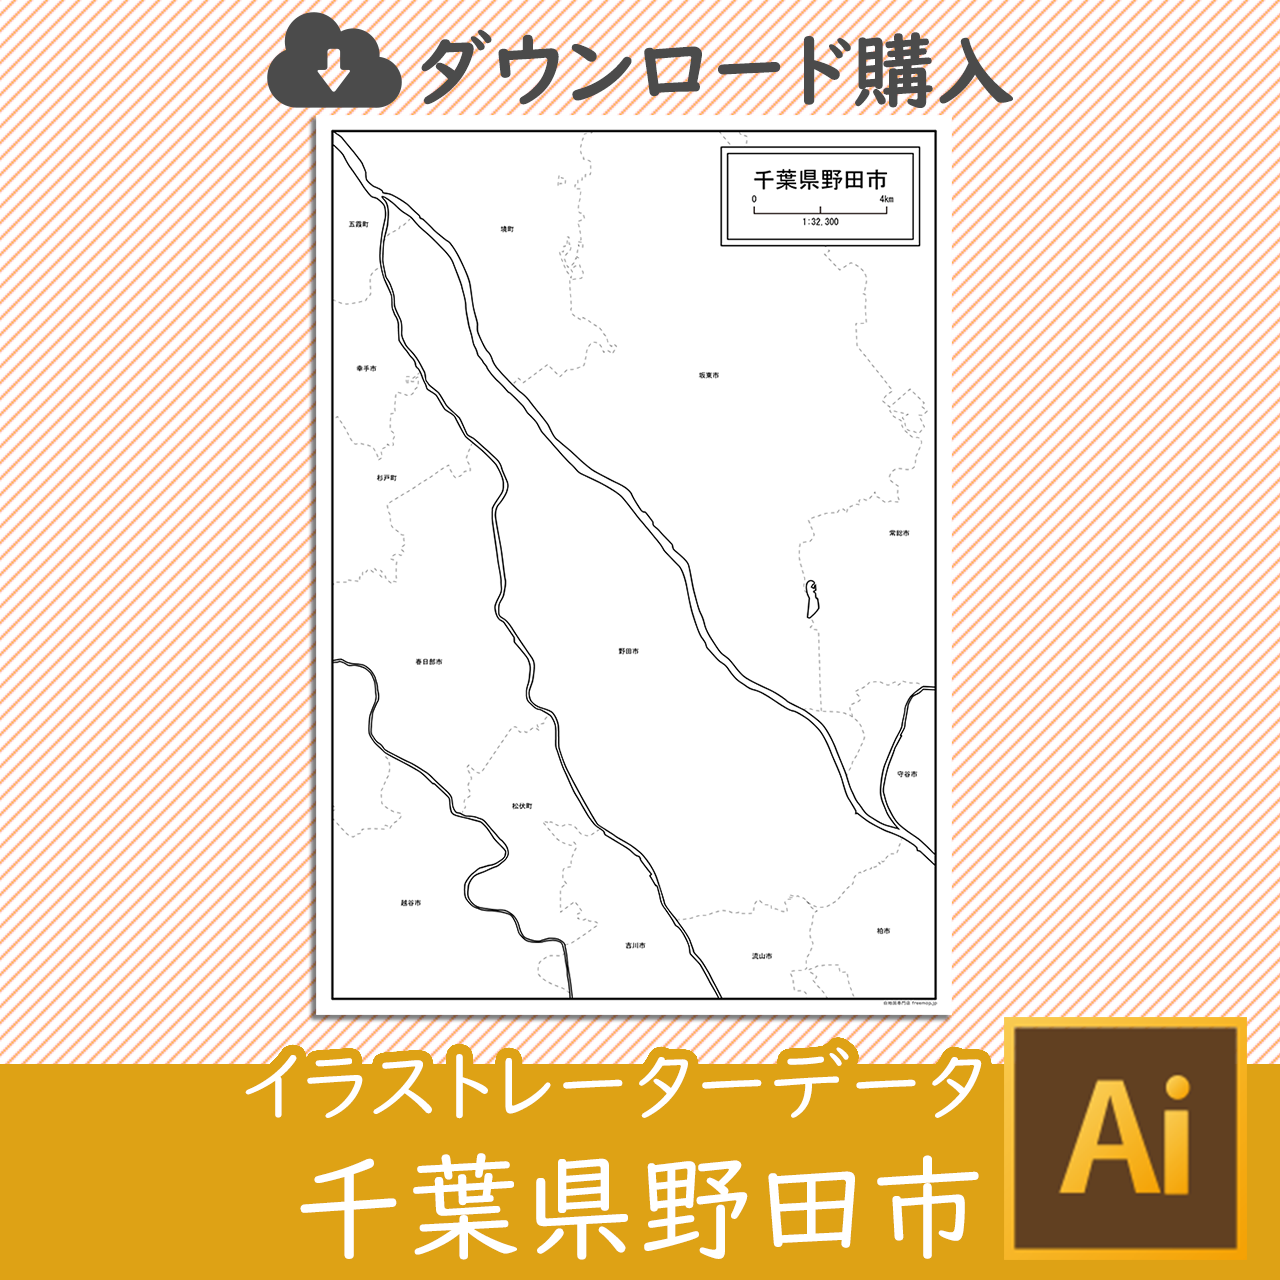 野田市のaiデータのサムネイル画像